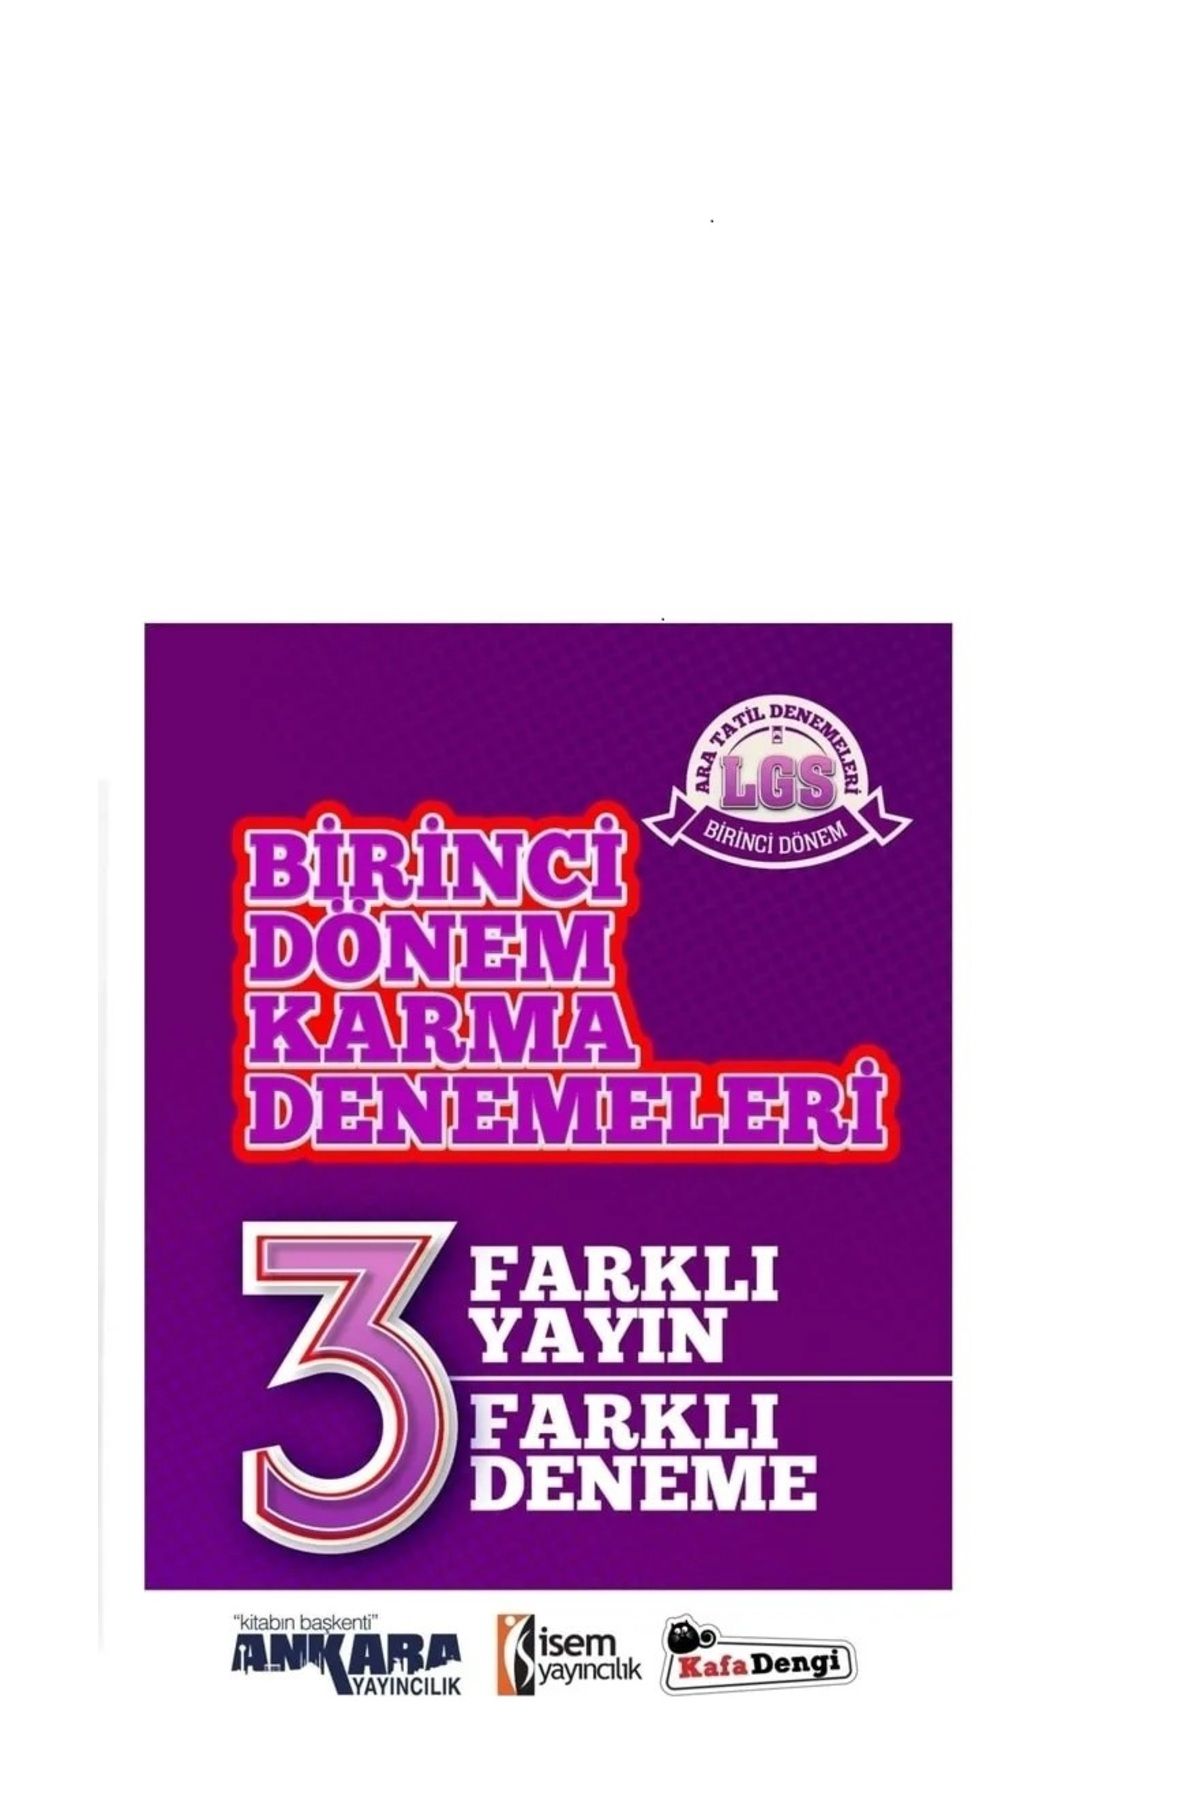 Master Karma Yayınları I. DÖNEM KARMA DENEME SETİ- ANKARA- İSEM KAFADENGİ/ 3 FARKLI YAYIN 3 FARKLI DENEME